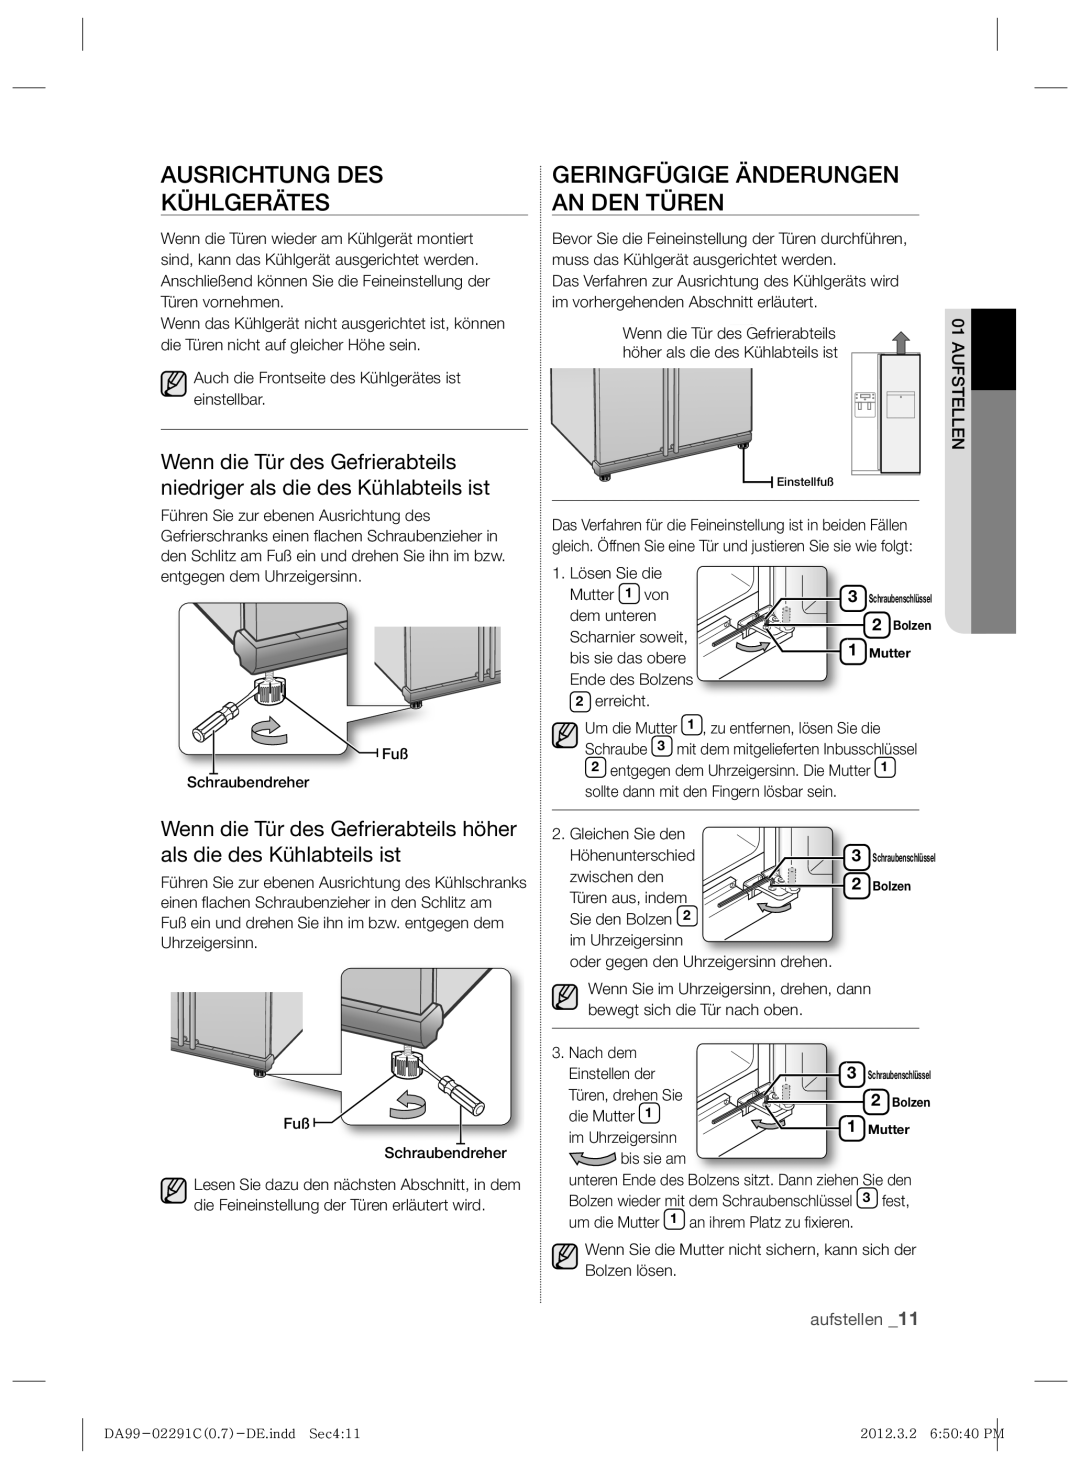 Samsung RSH7UNRS1/XEG, RSH7ZNRS1/EUR manual Ausrichtung Des Kühlgerätes, Geringfügige Änderungen An Den Türen, aufstellen 